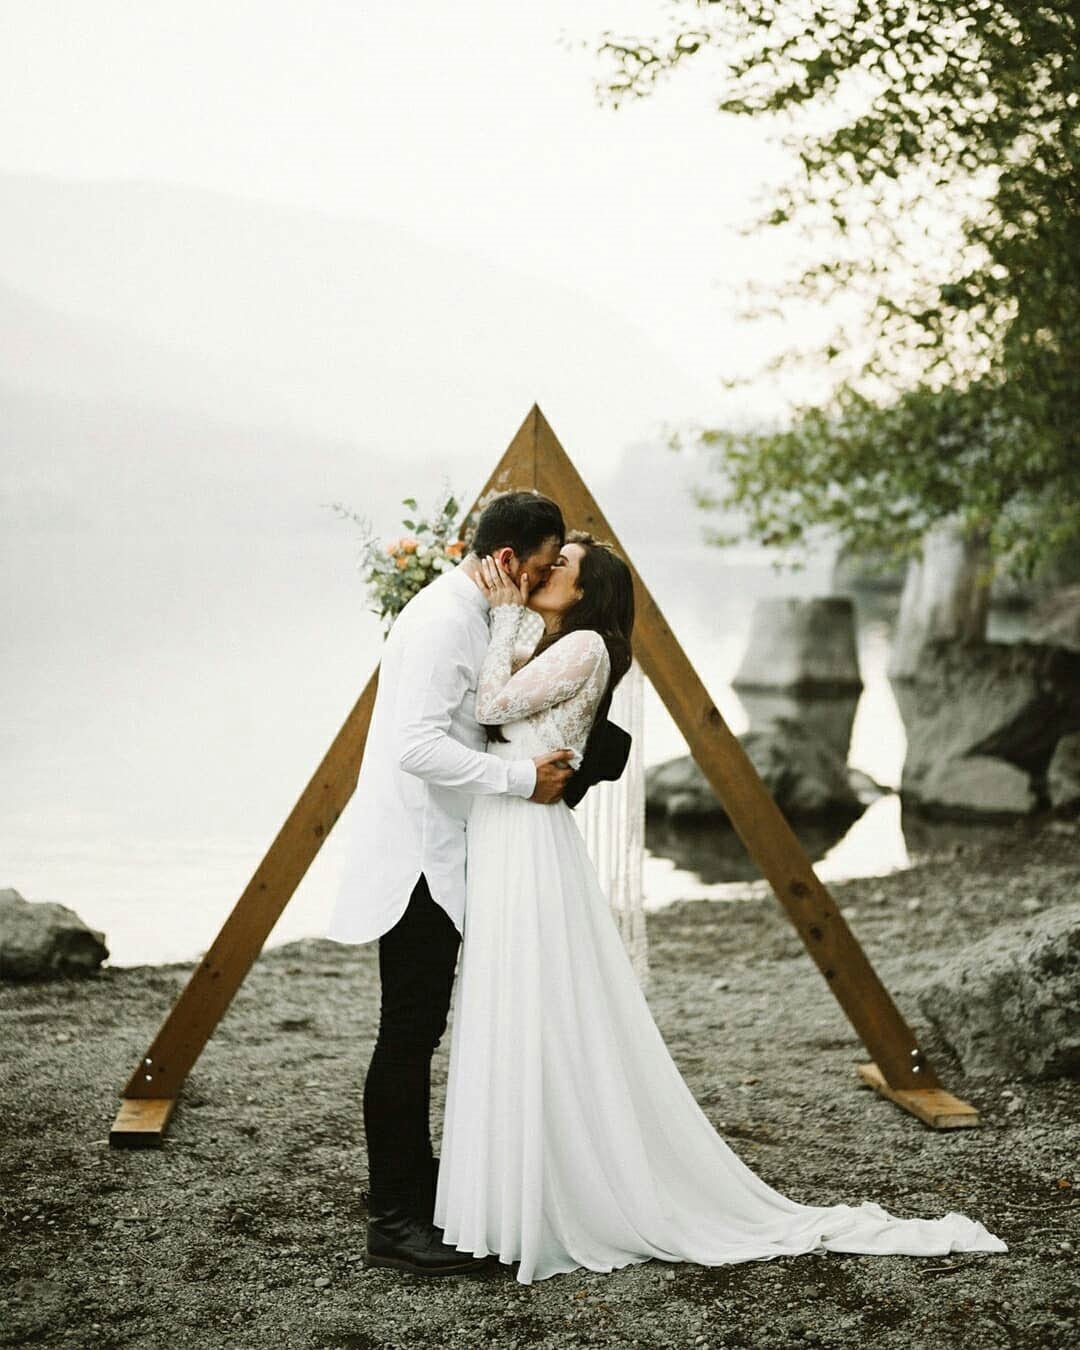 wedding ideas minimalistic arch wooden bride groom